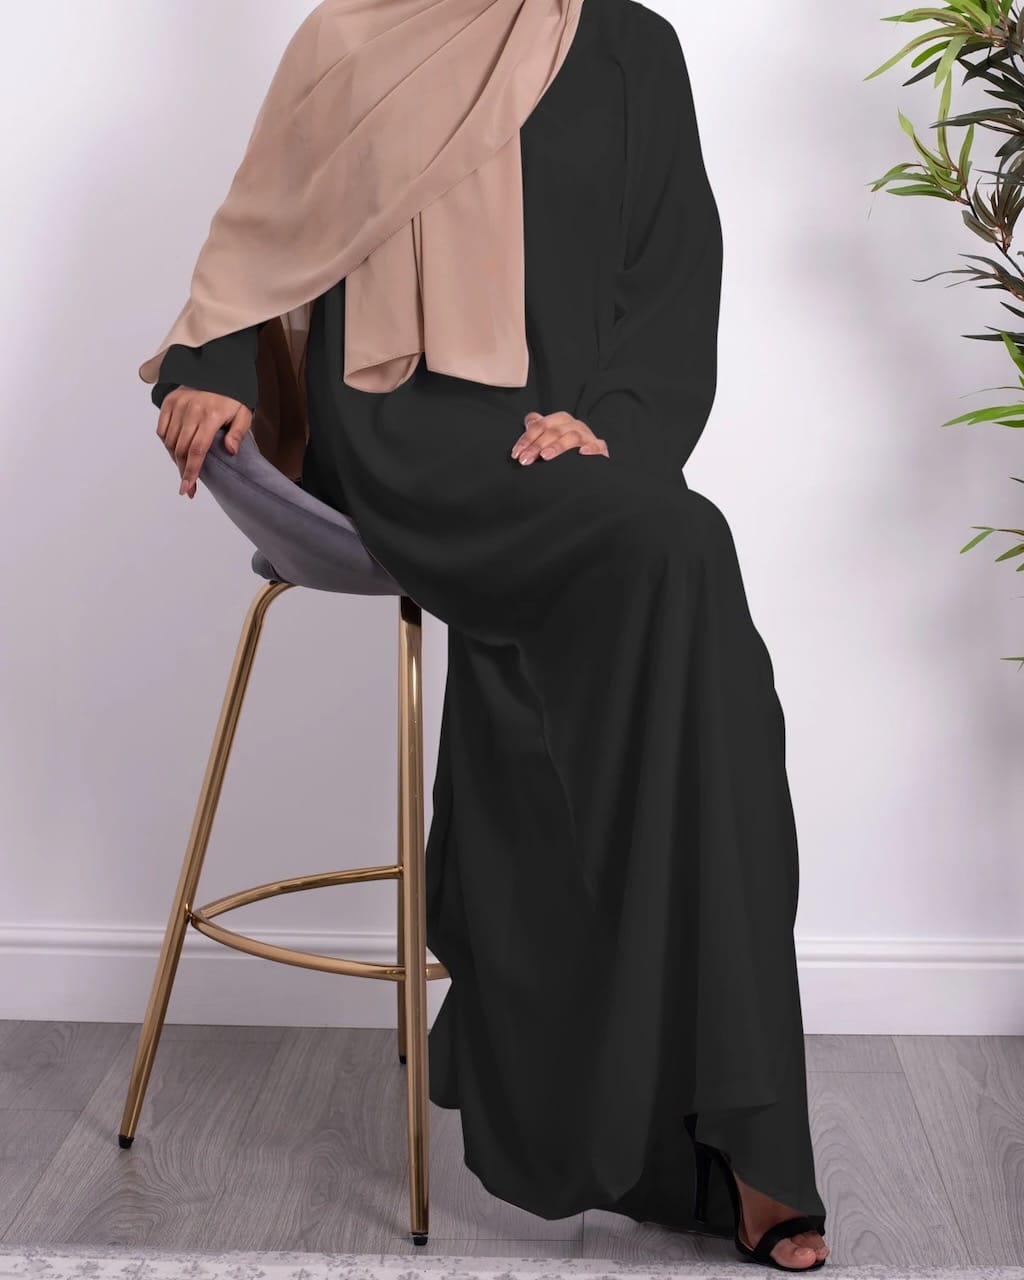 slip dress black fajr noor Australia modest open abaya dresses